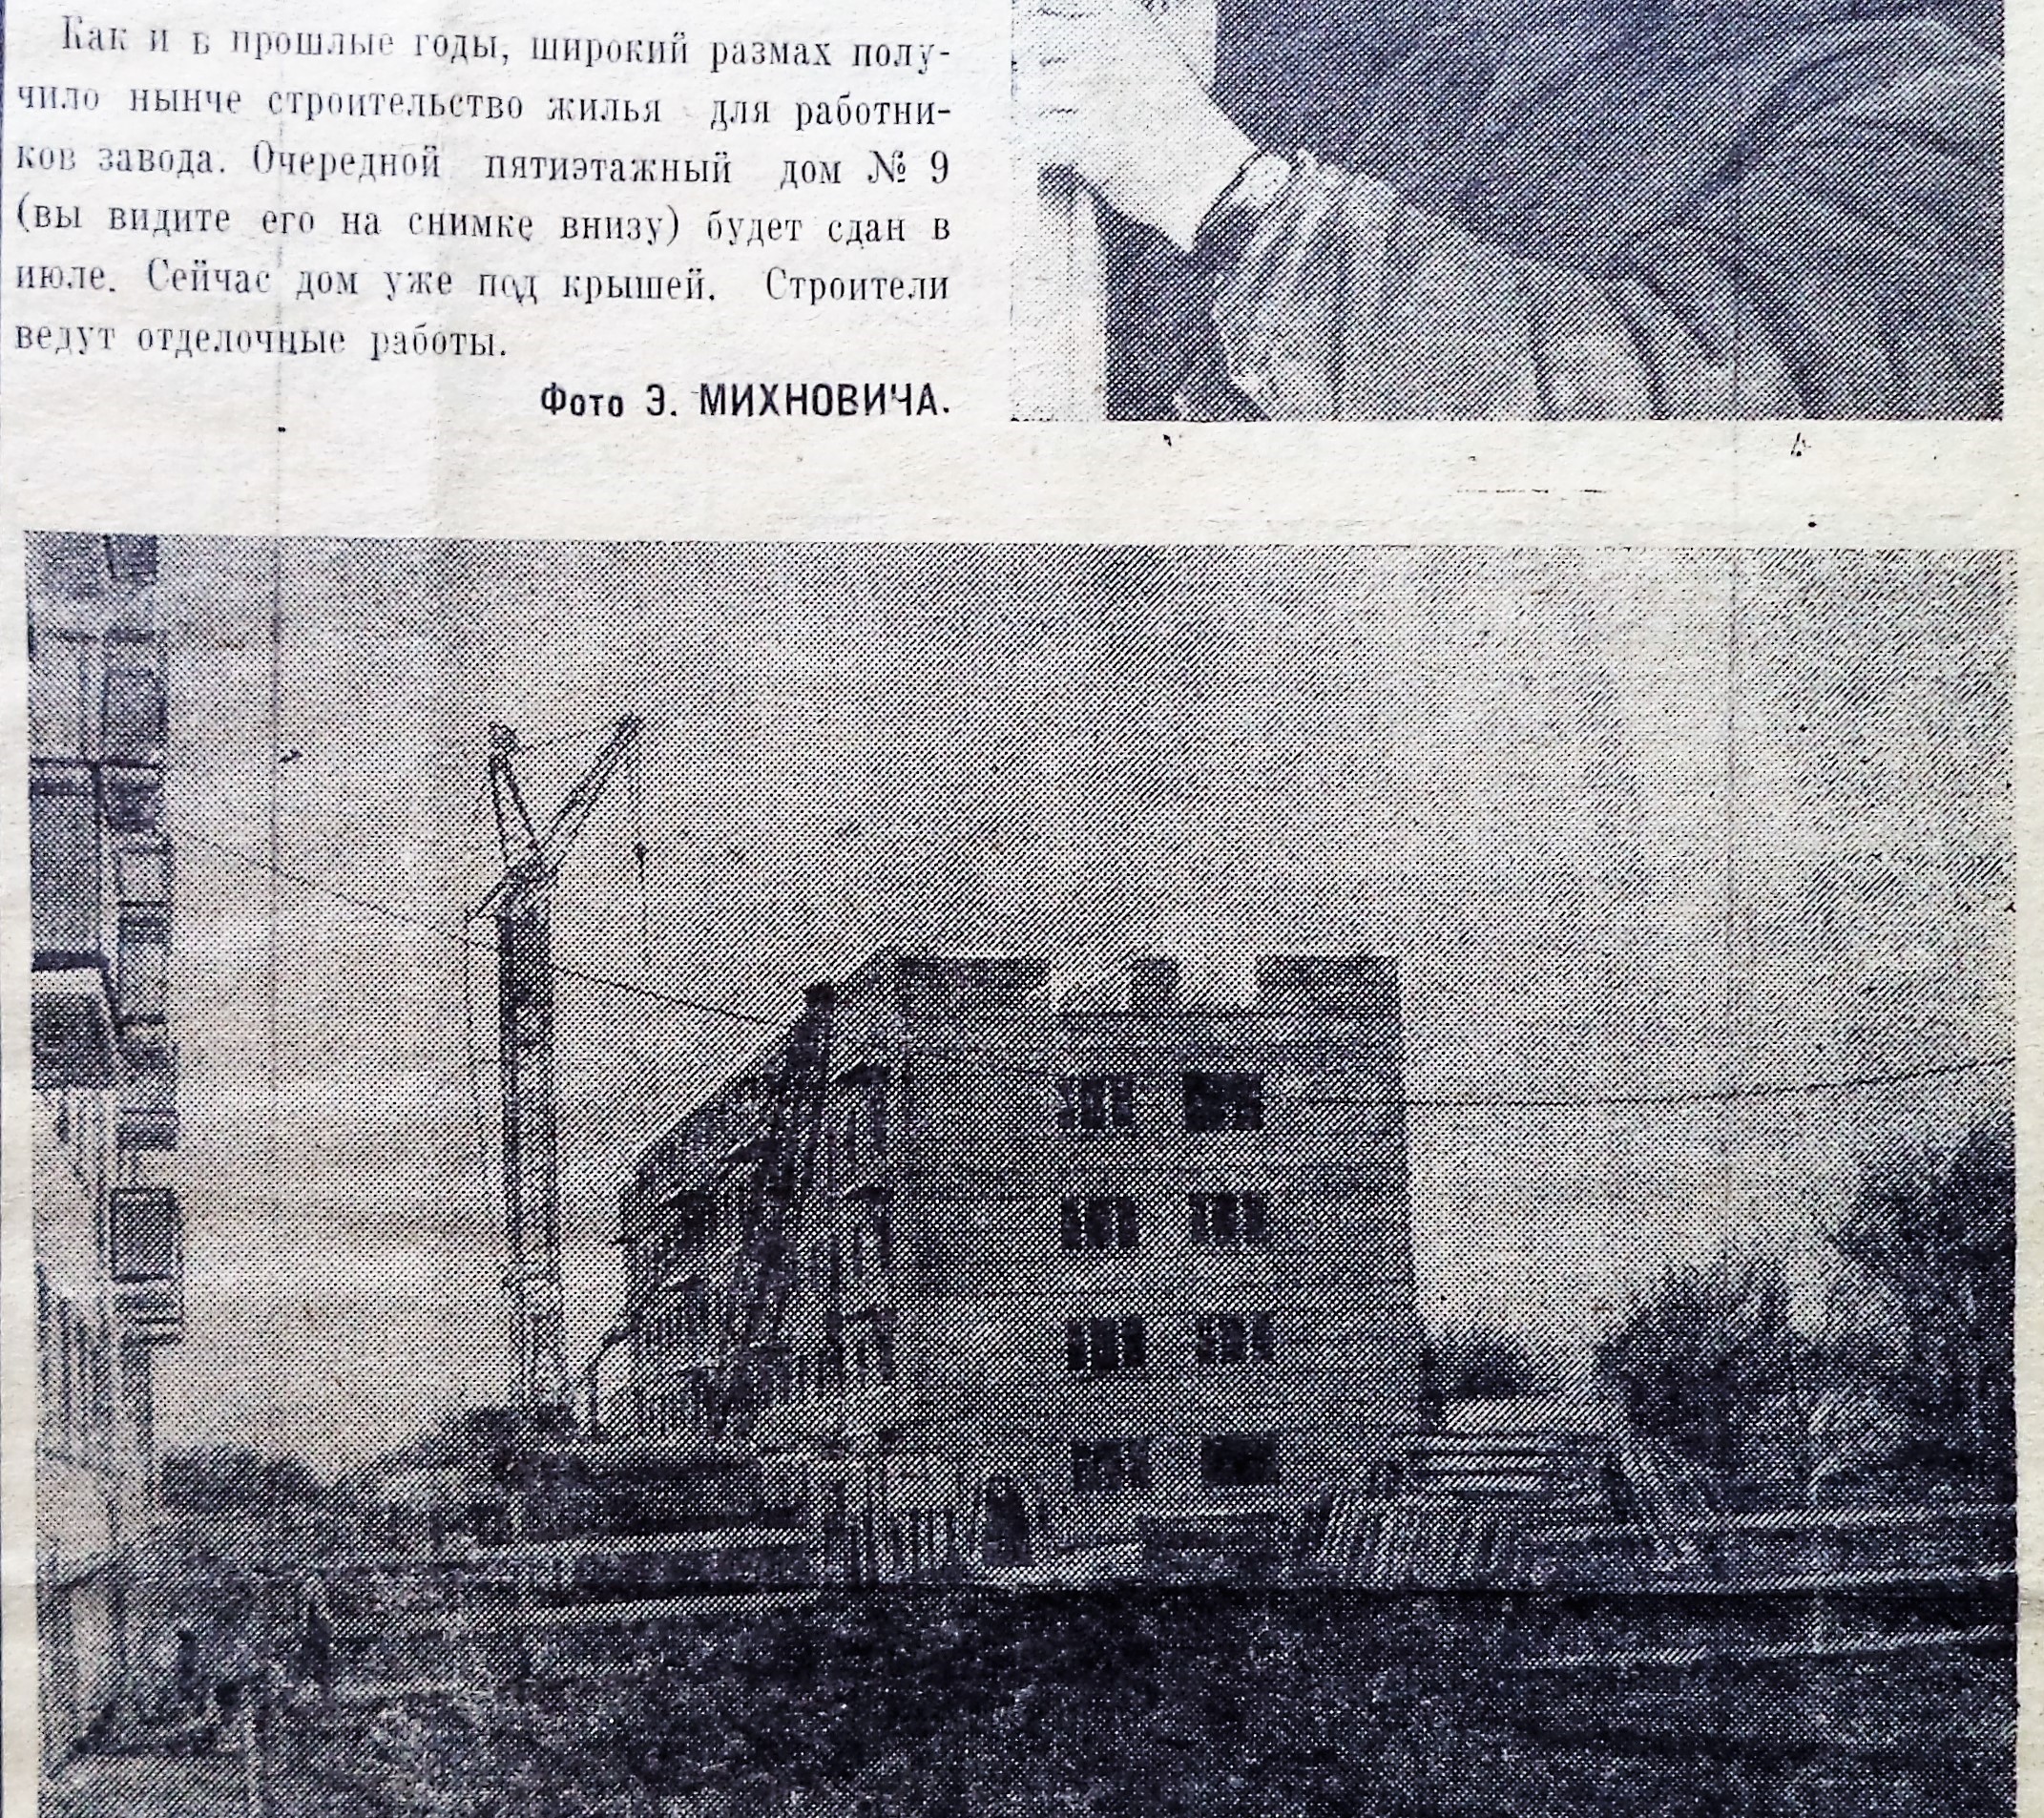 Моршанская-ФОТО-14-Заводская жизнь-1971-15 июня-дом по ЮП-118